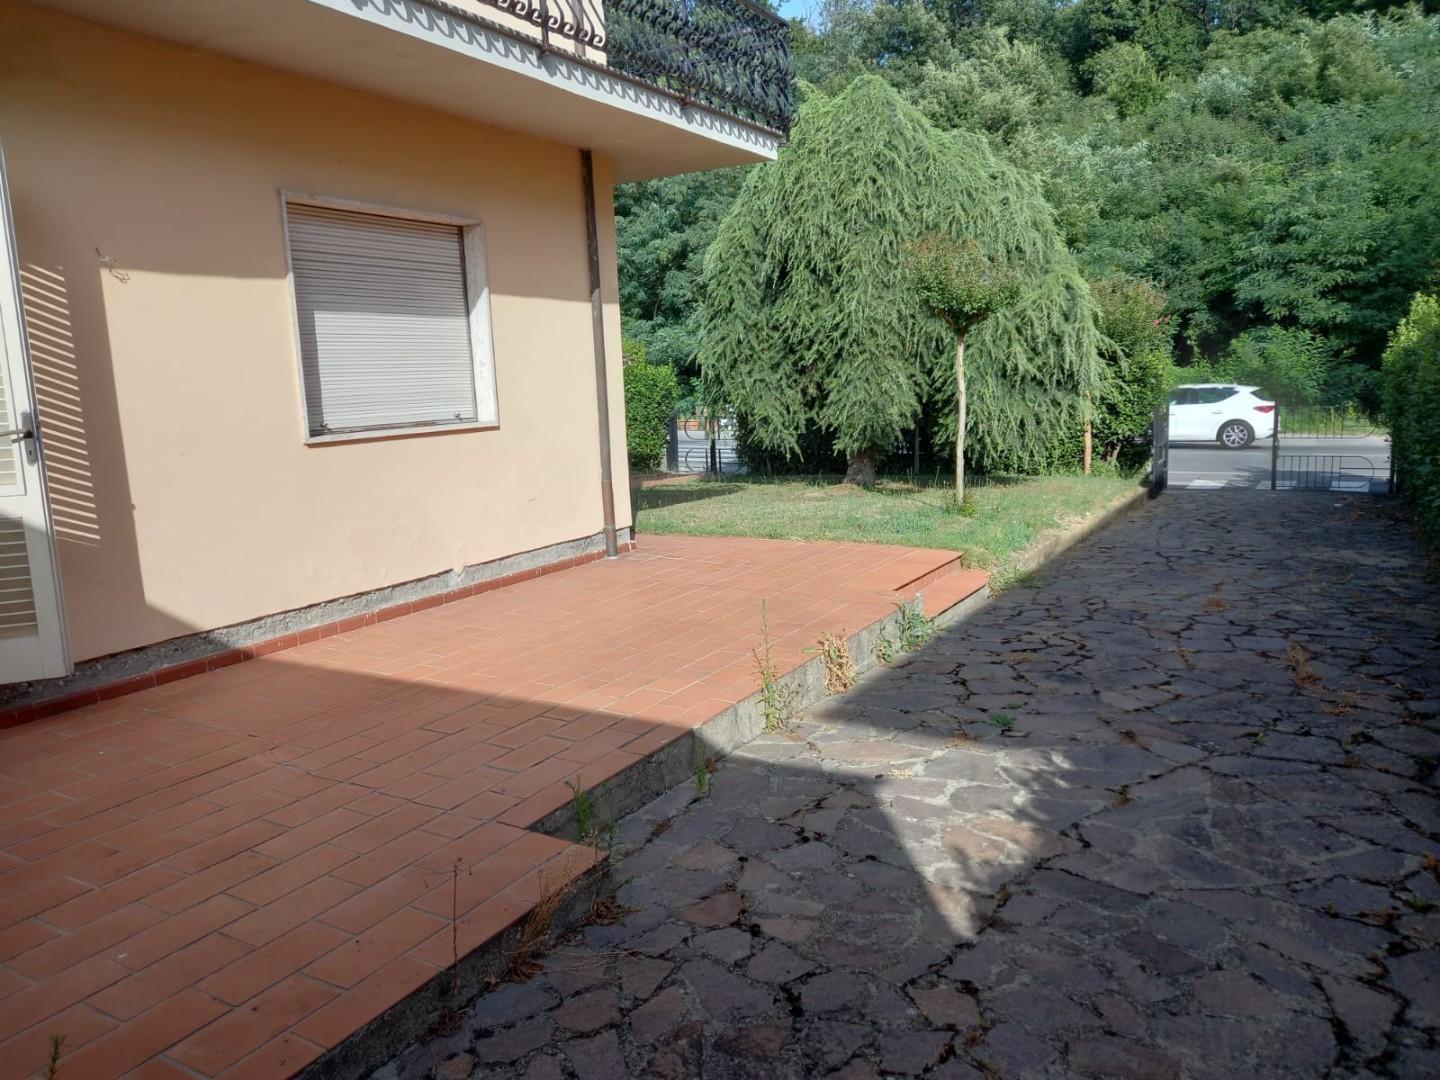 Appartamento in vendita a Capannori, 5 locali, prezzo € 165.000 | PortaleAgenzieImmobiliari.it